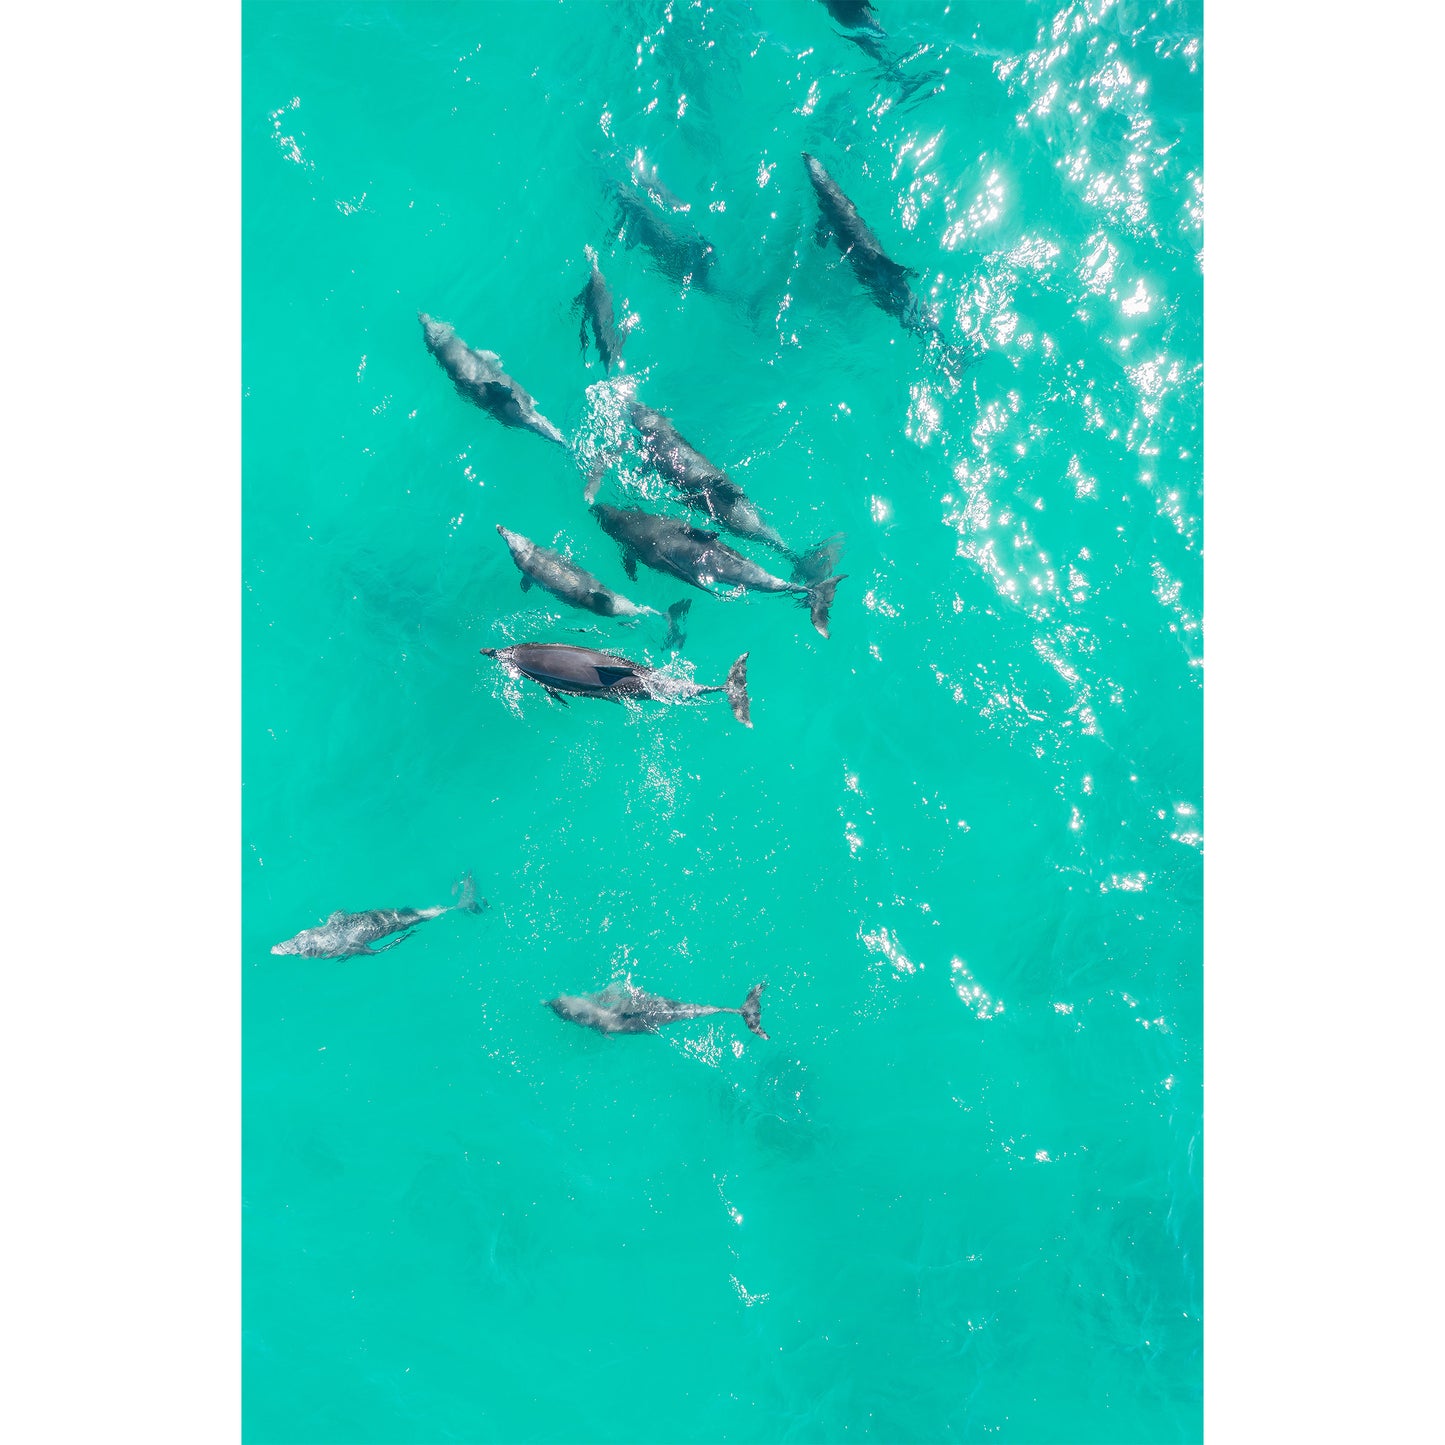 Bondi Dolphins